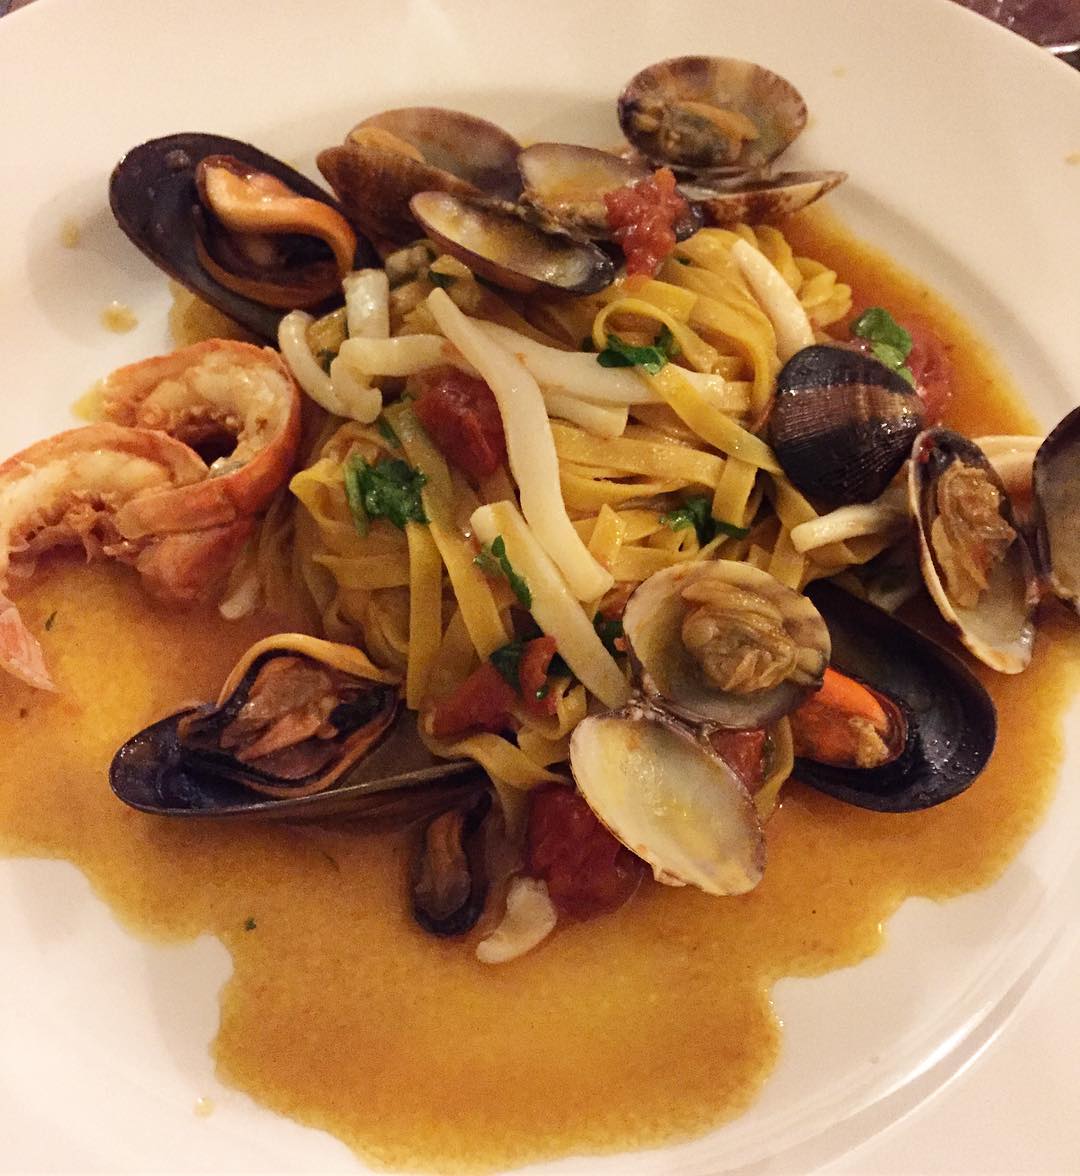 Seafood pasta, soooo good!!! ðð± _______________________________________________________________